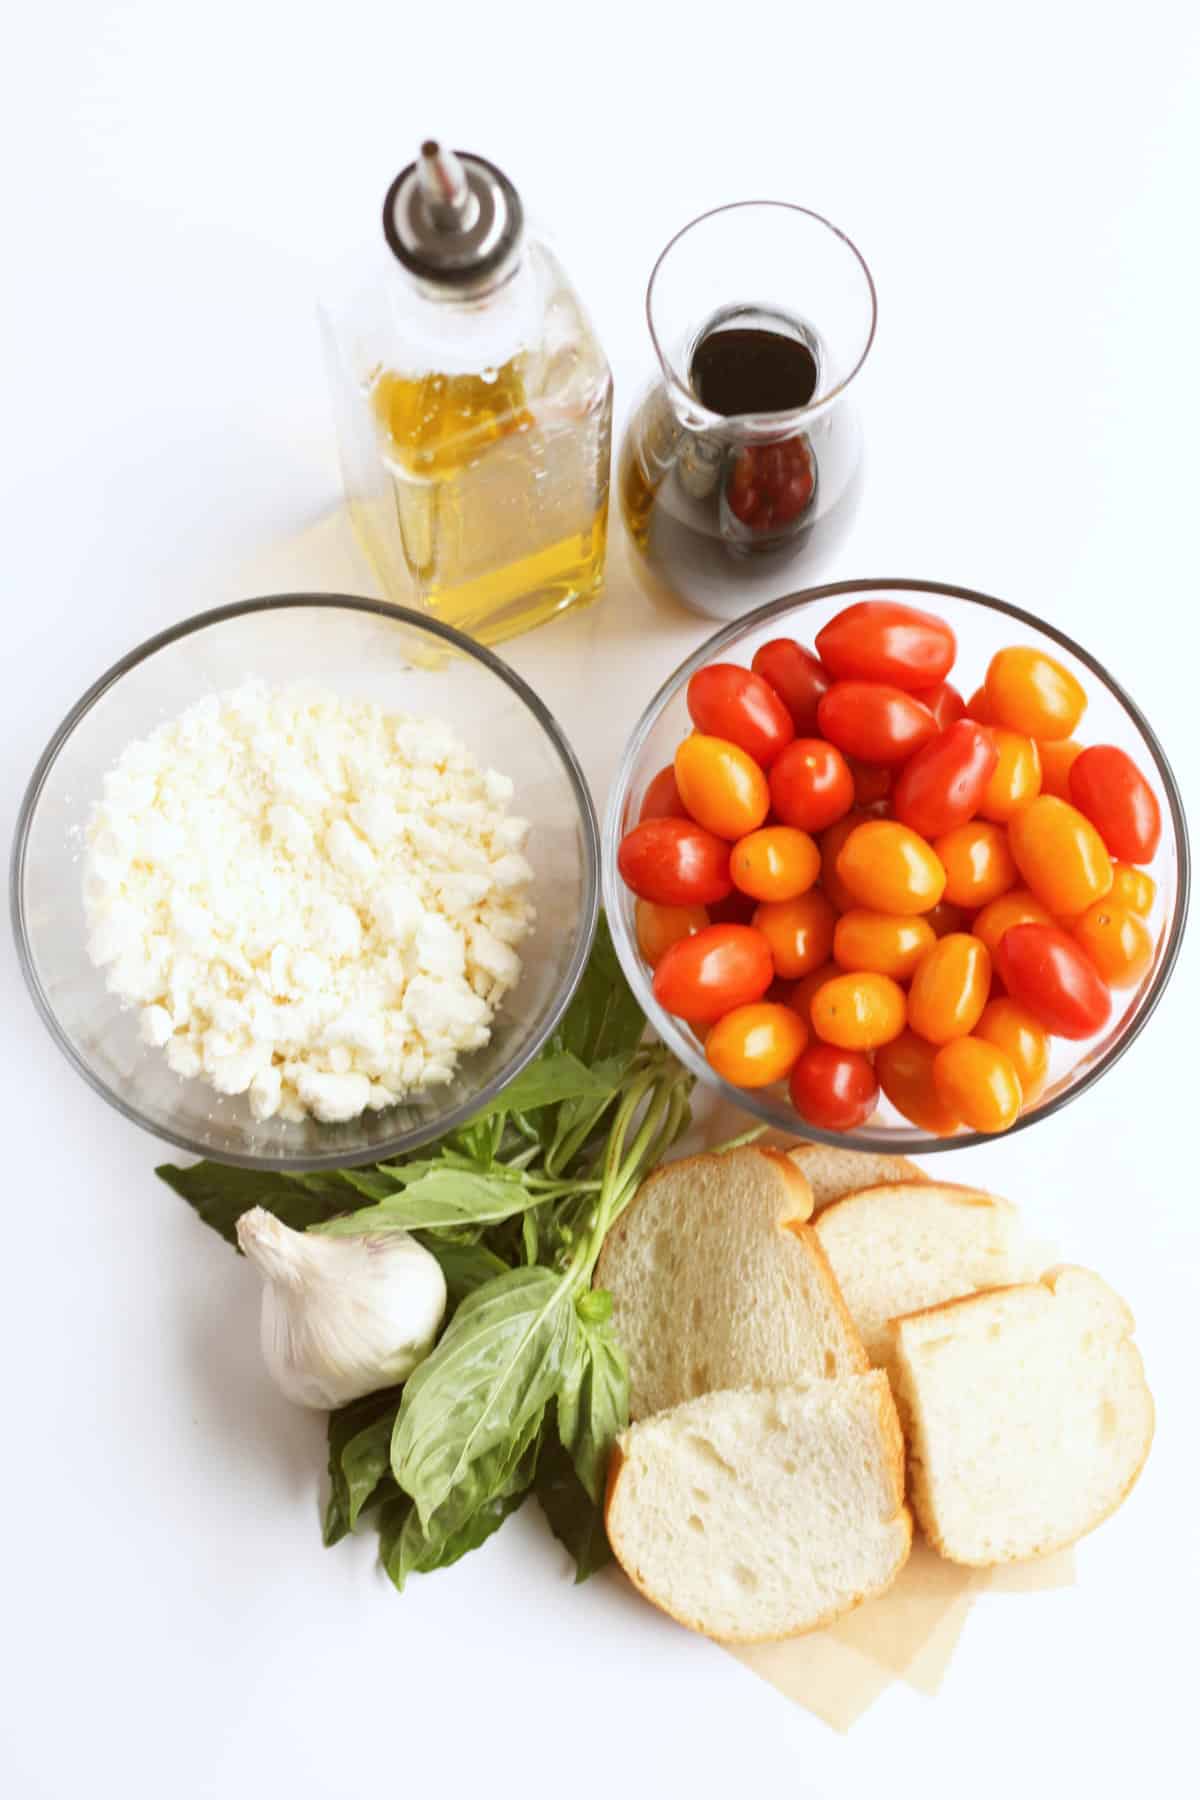 ingredients for cherry tomato bruschetta.